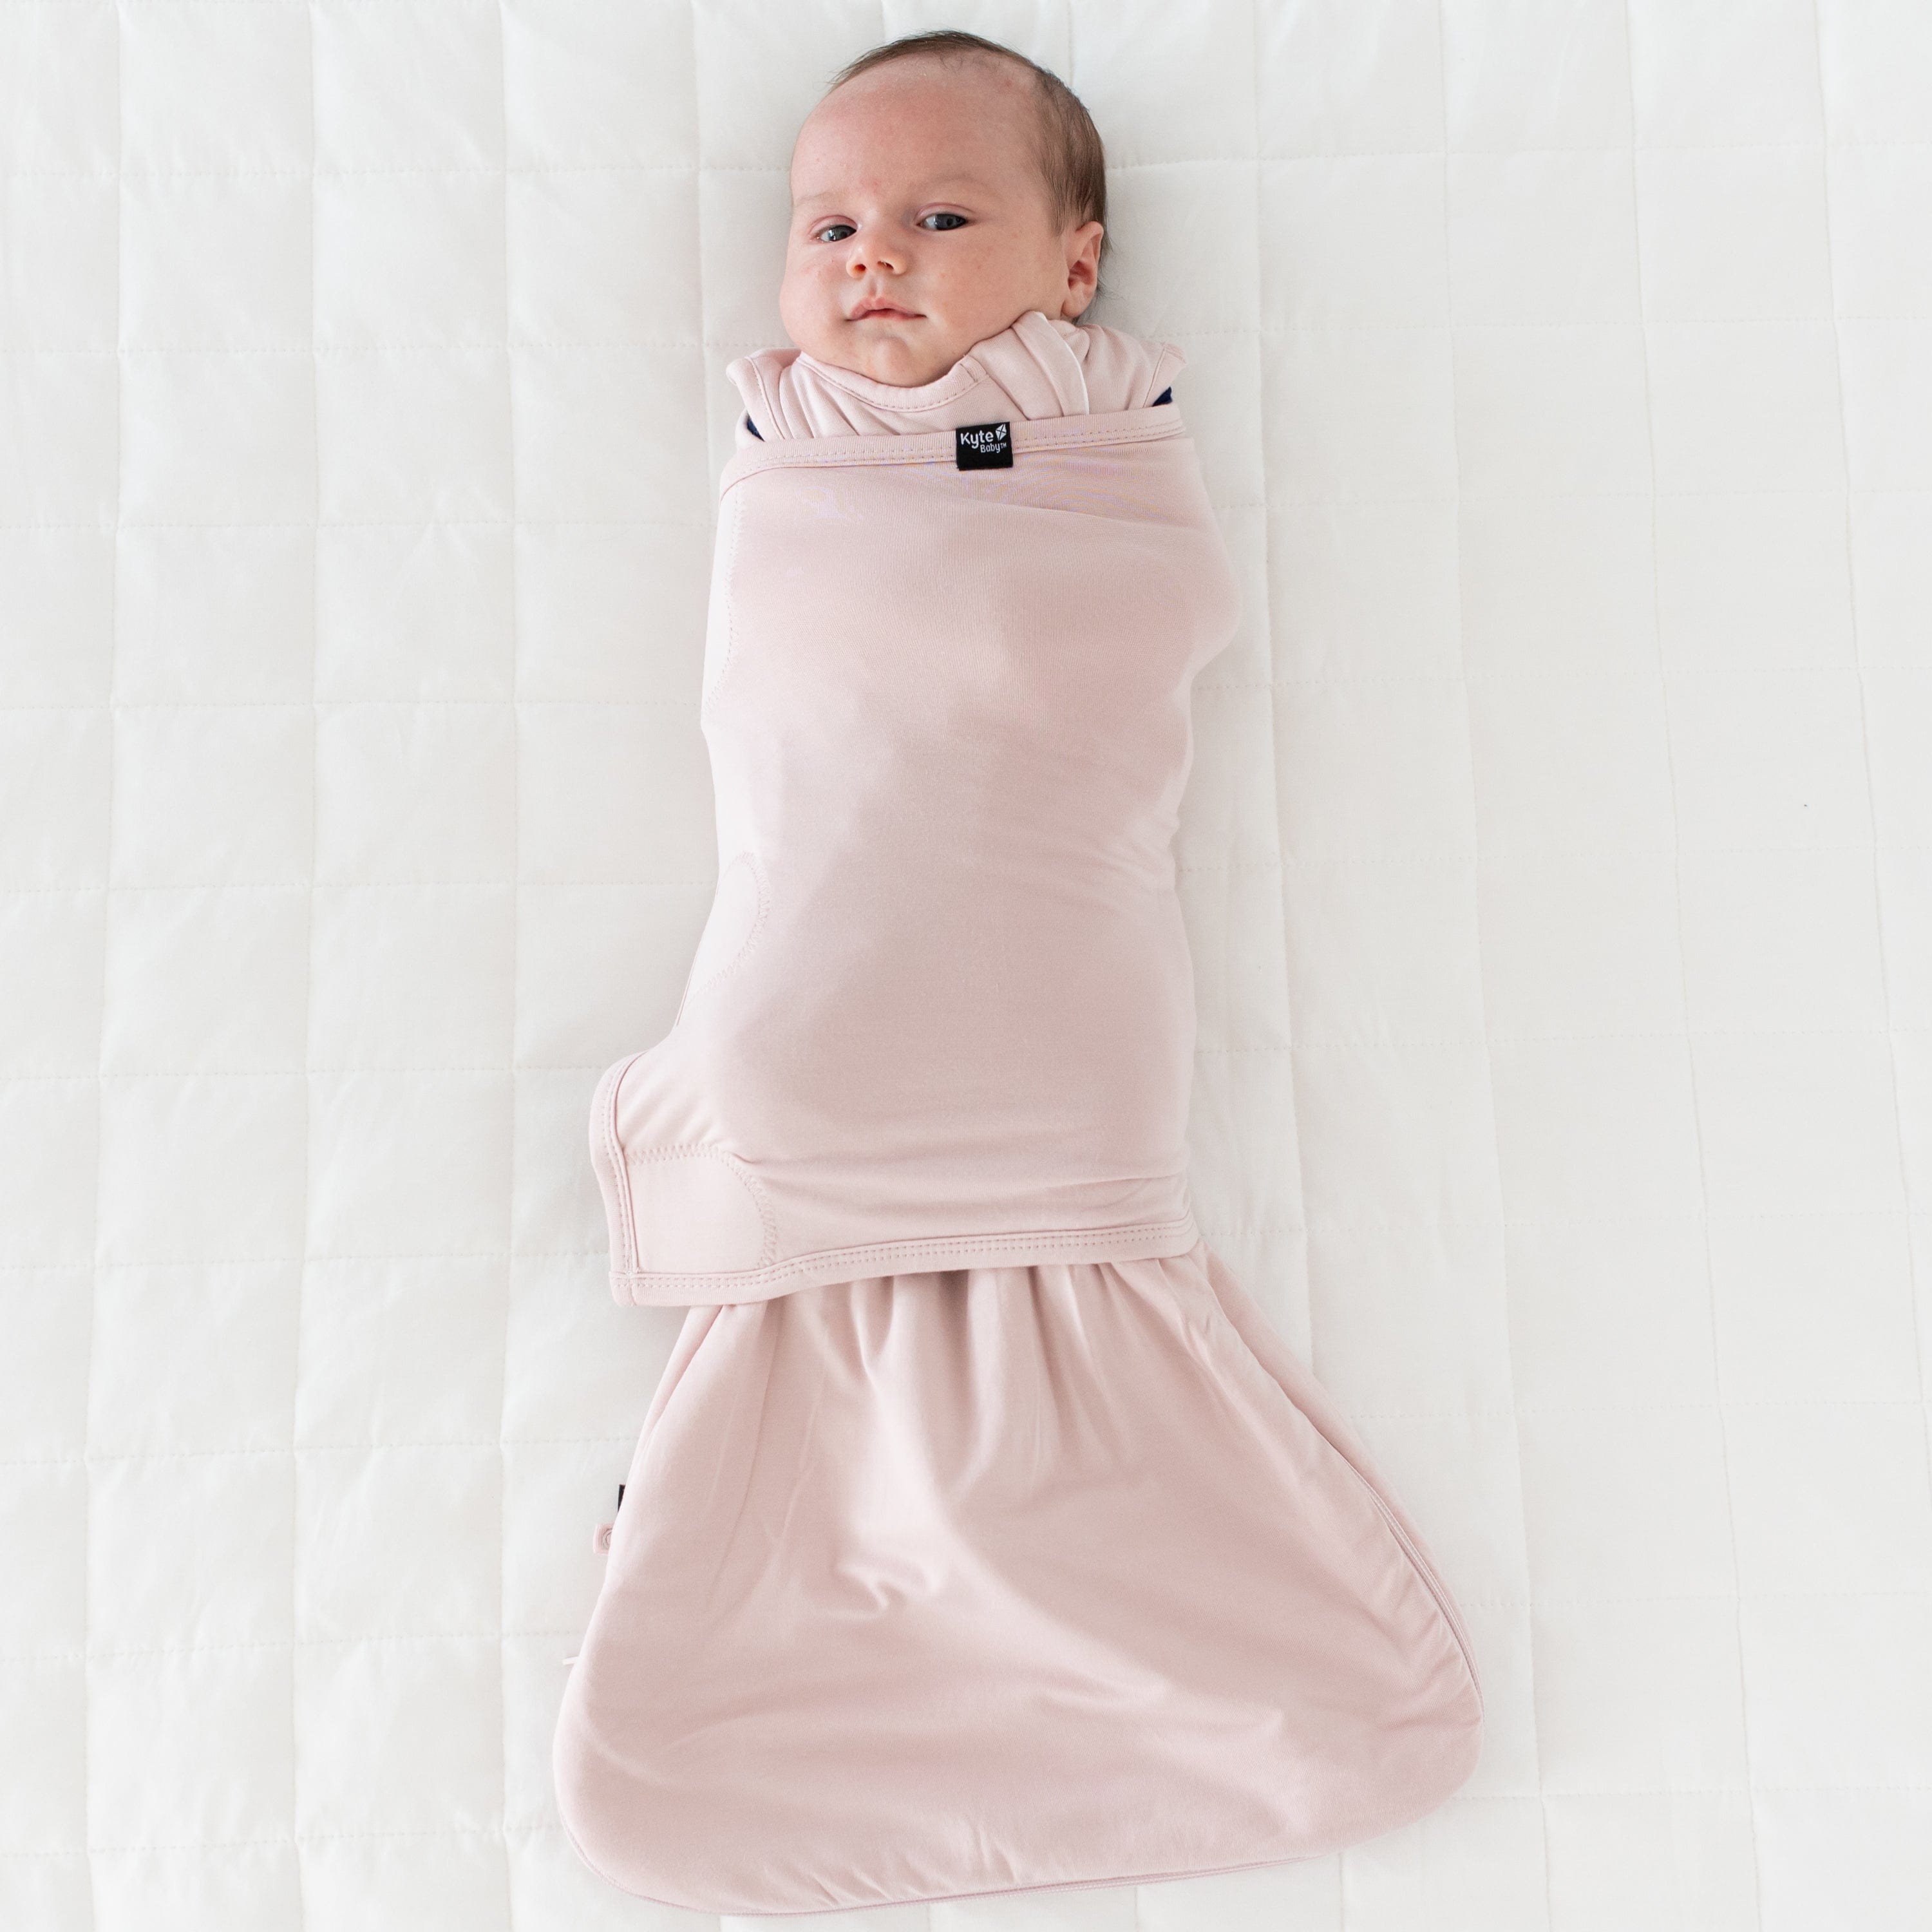 Baby wearing Kyte Baby Sleep Bag Swaddler in Blush